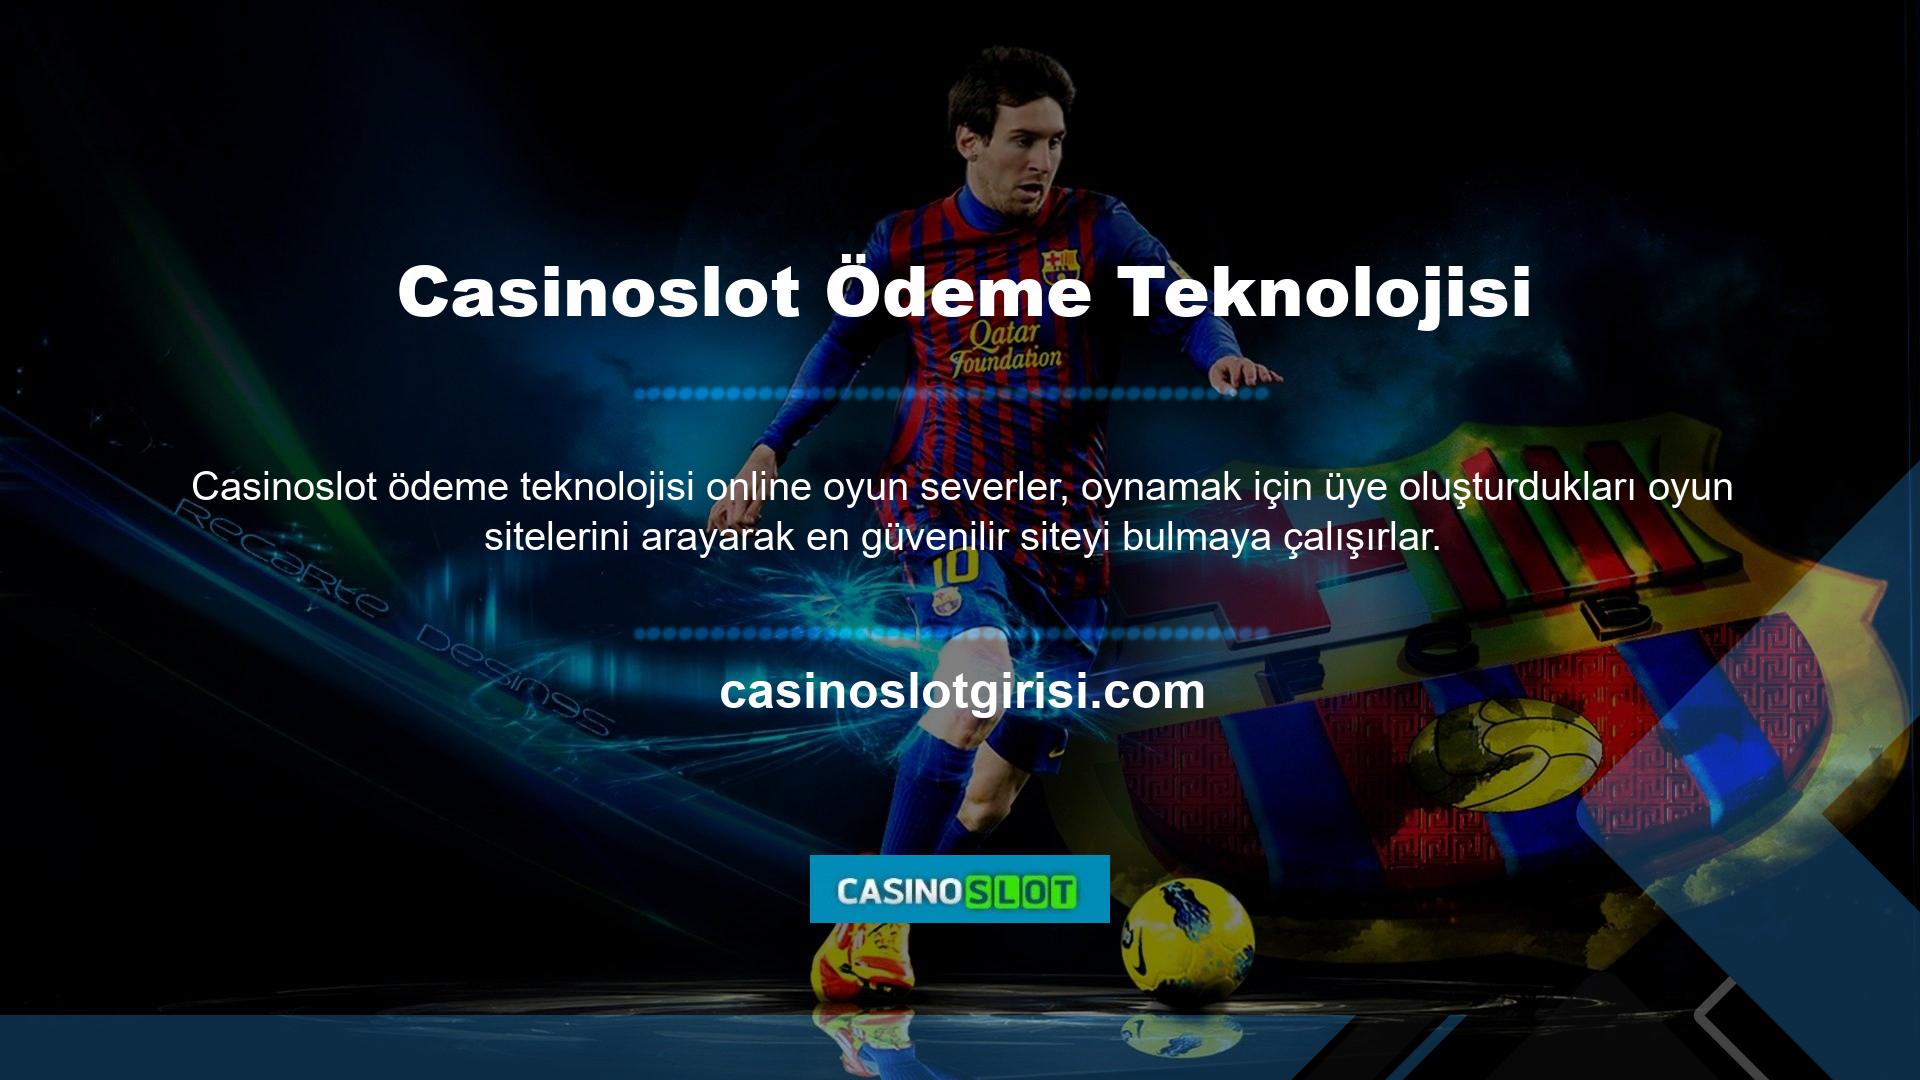 Casinoslot Gaming web sitesinin güvenli ödeme teknolojisini, oyun lisansını, altyapı sistemini ve oyun türünü dikkate alırlar